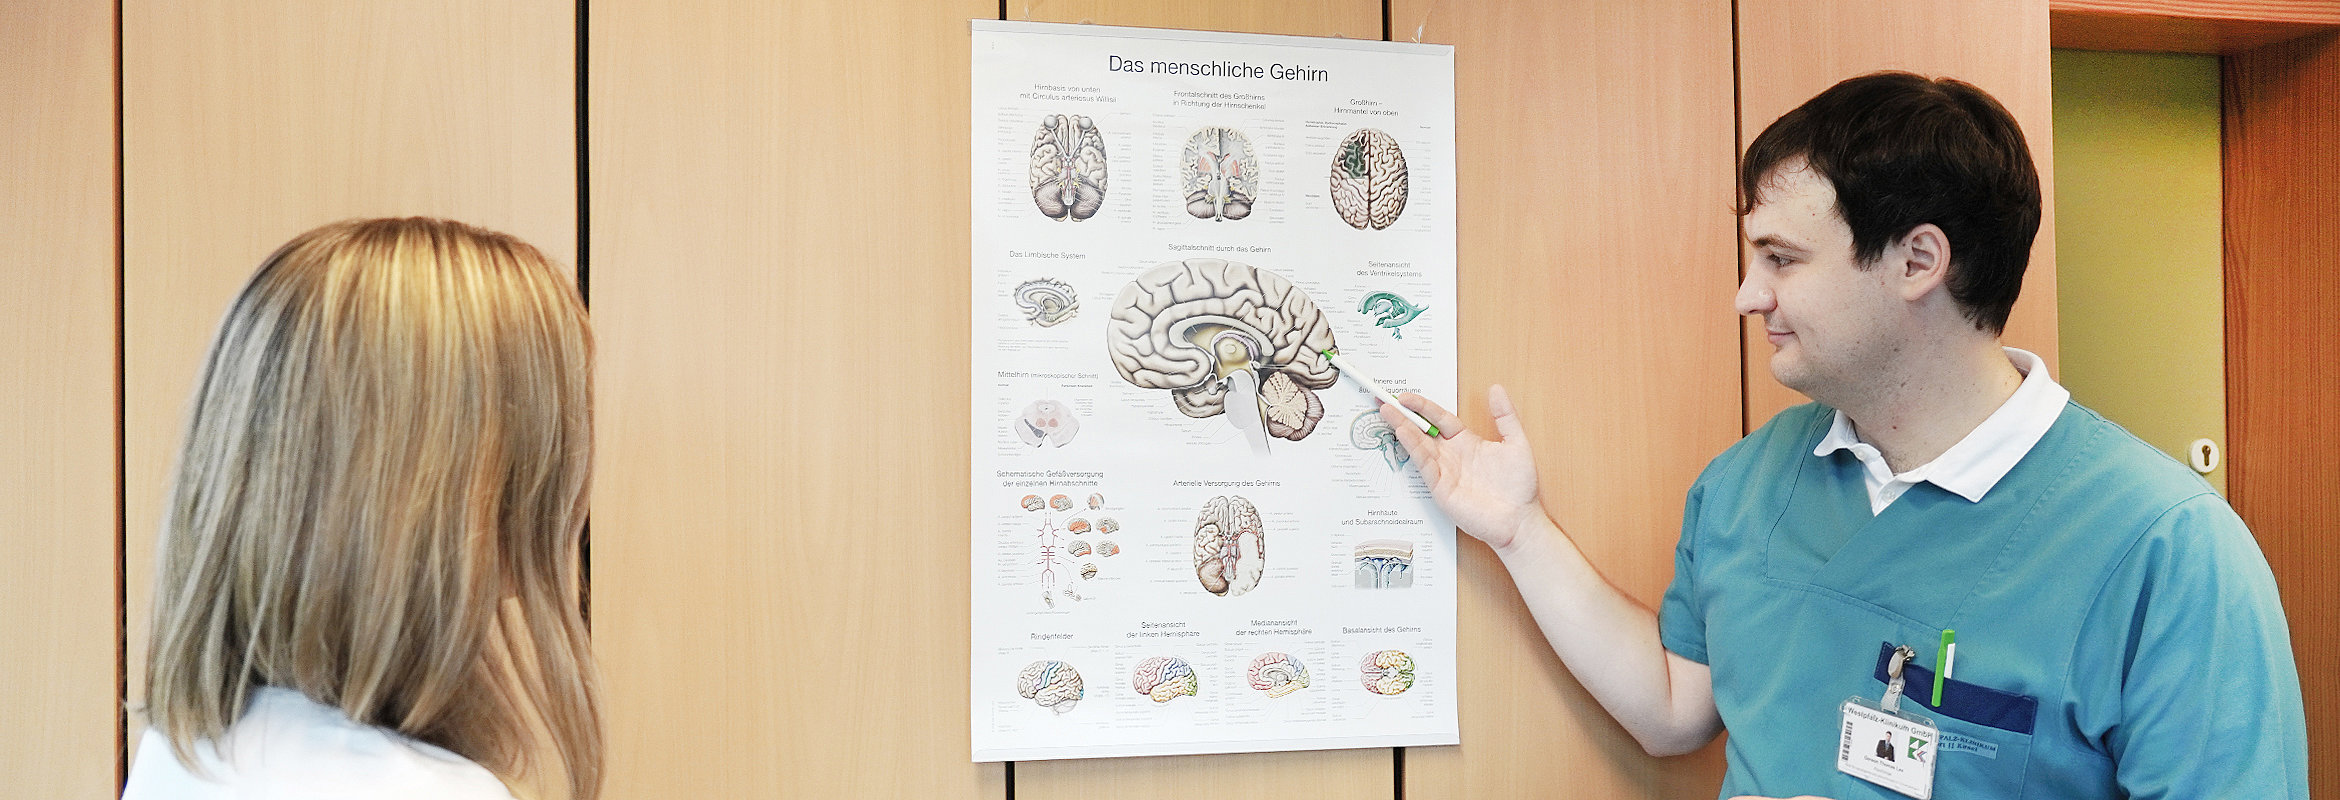 Ein Arzt der Klinik für neurologische und neurochirurgische Frührehabilitation in Kusel erläutert einer Patientin etwas an einem Schaubild